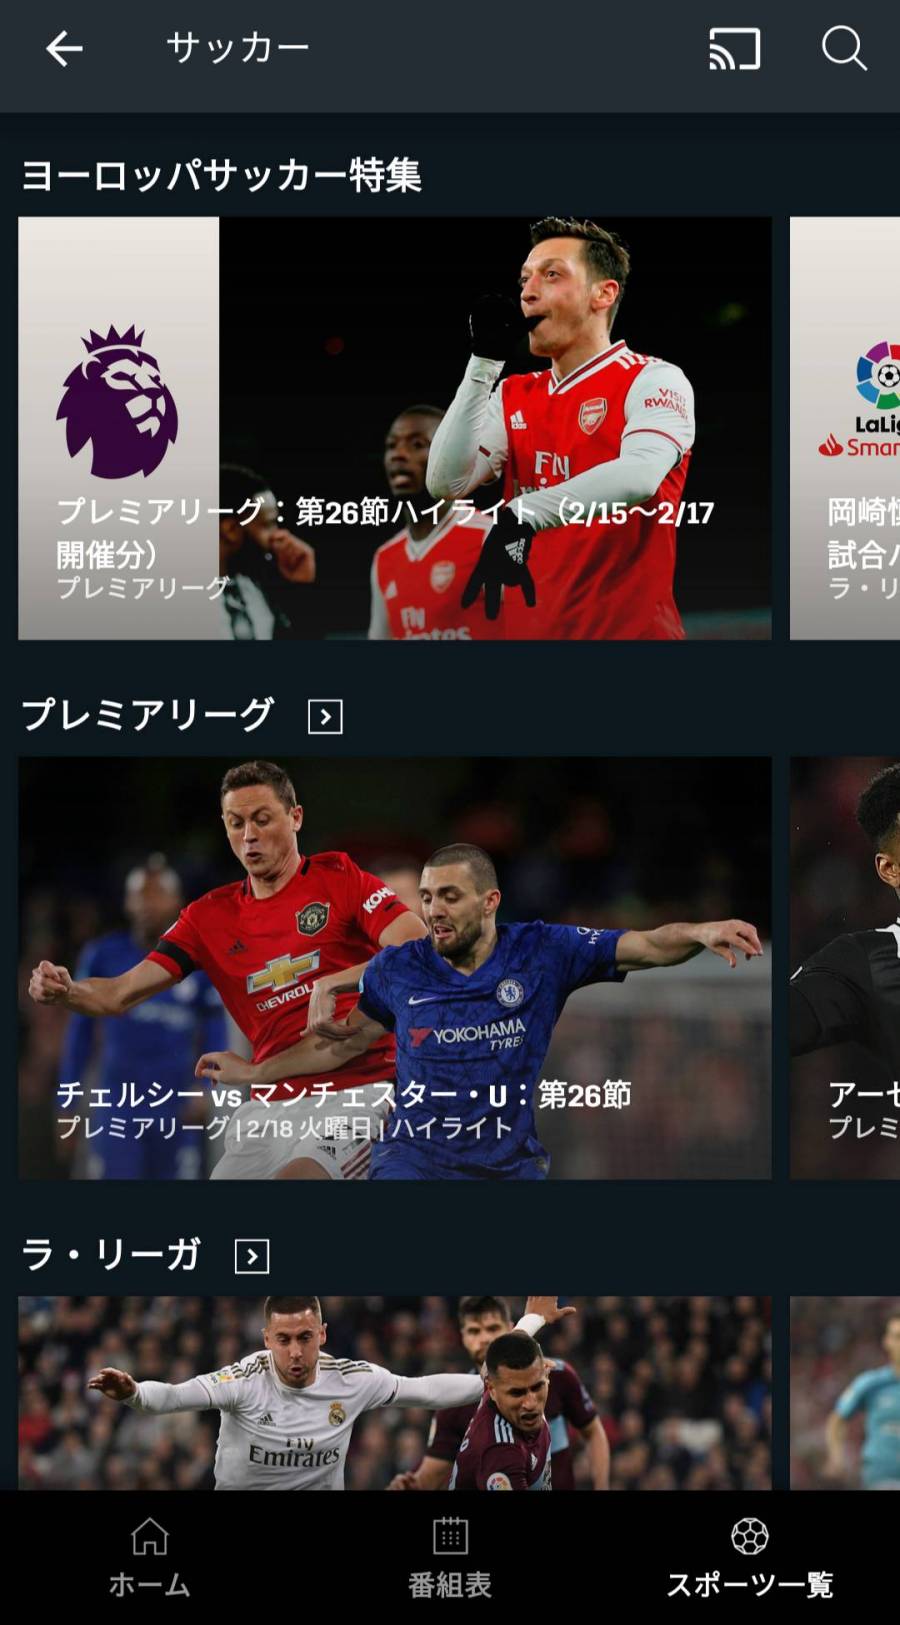 『DAZN』アプリ サッカー画面